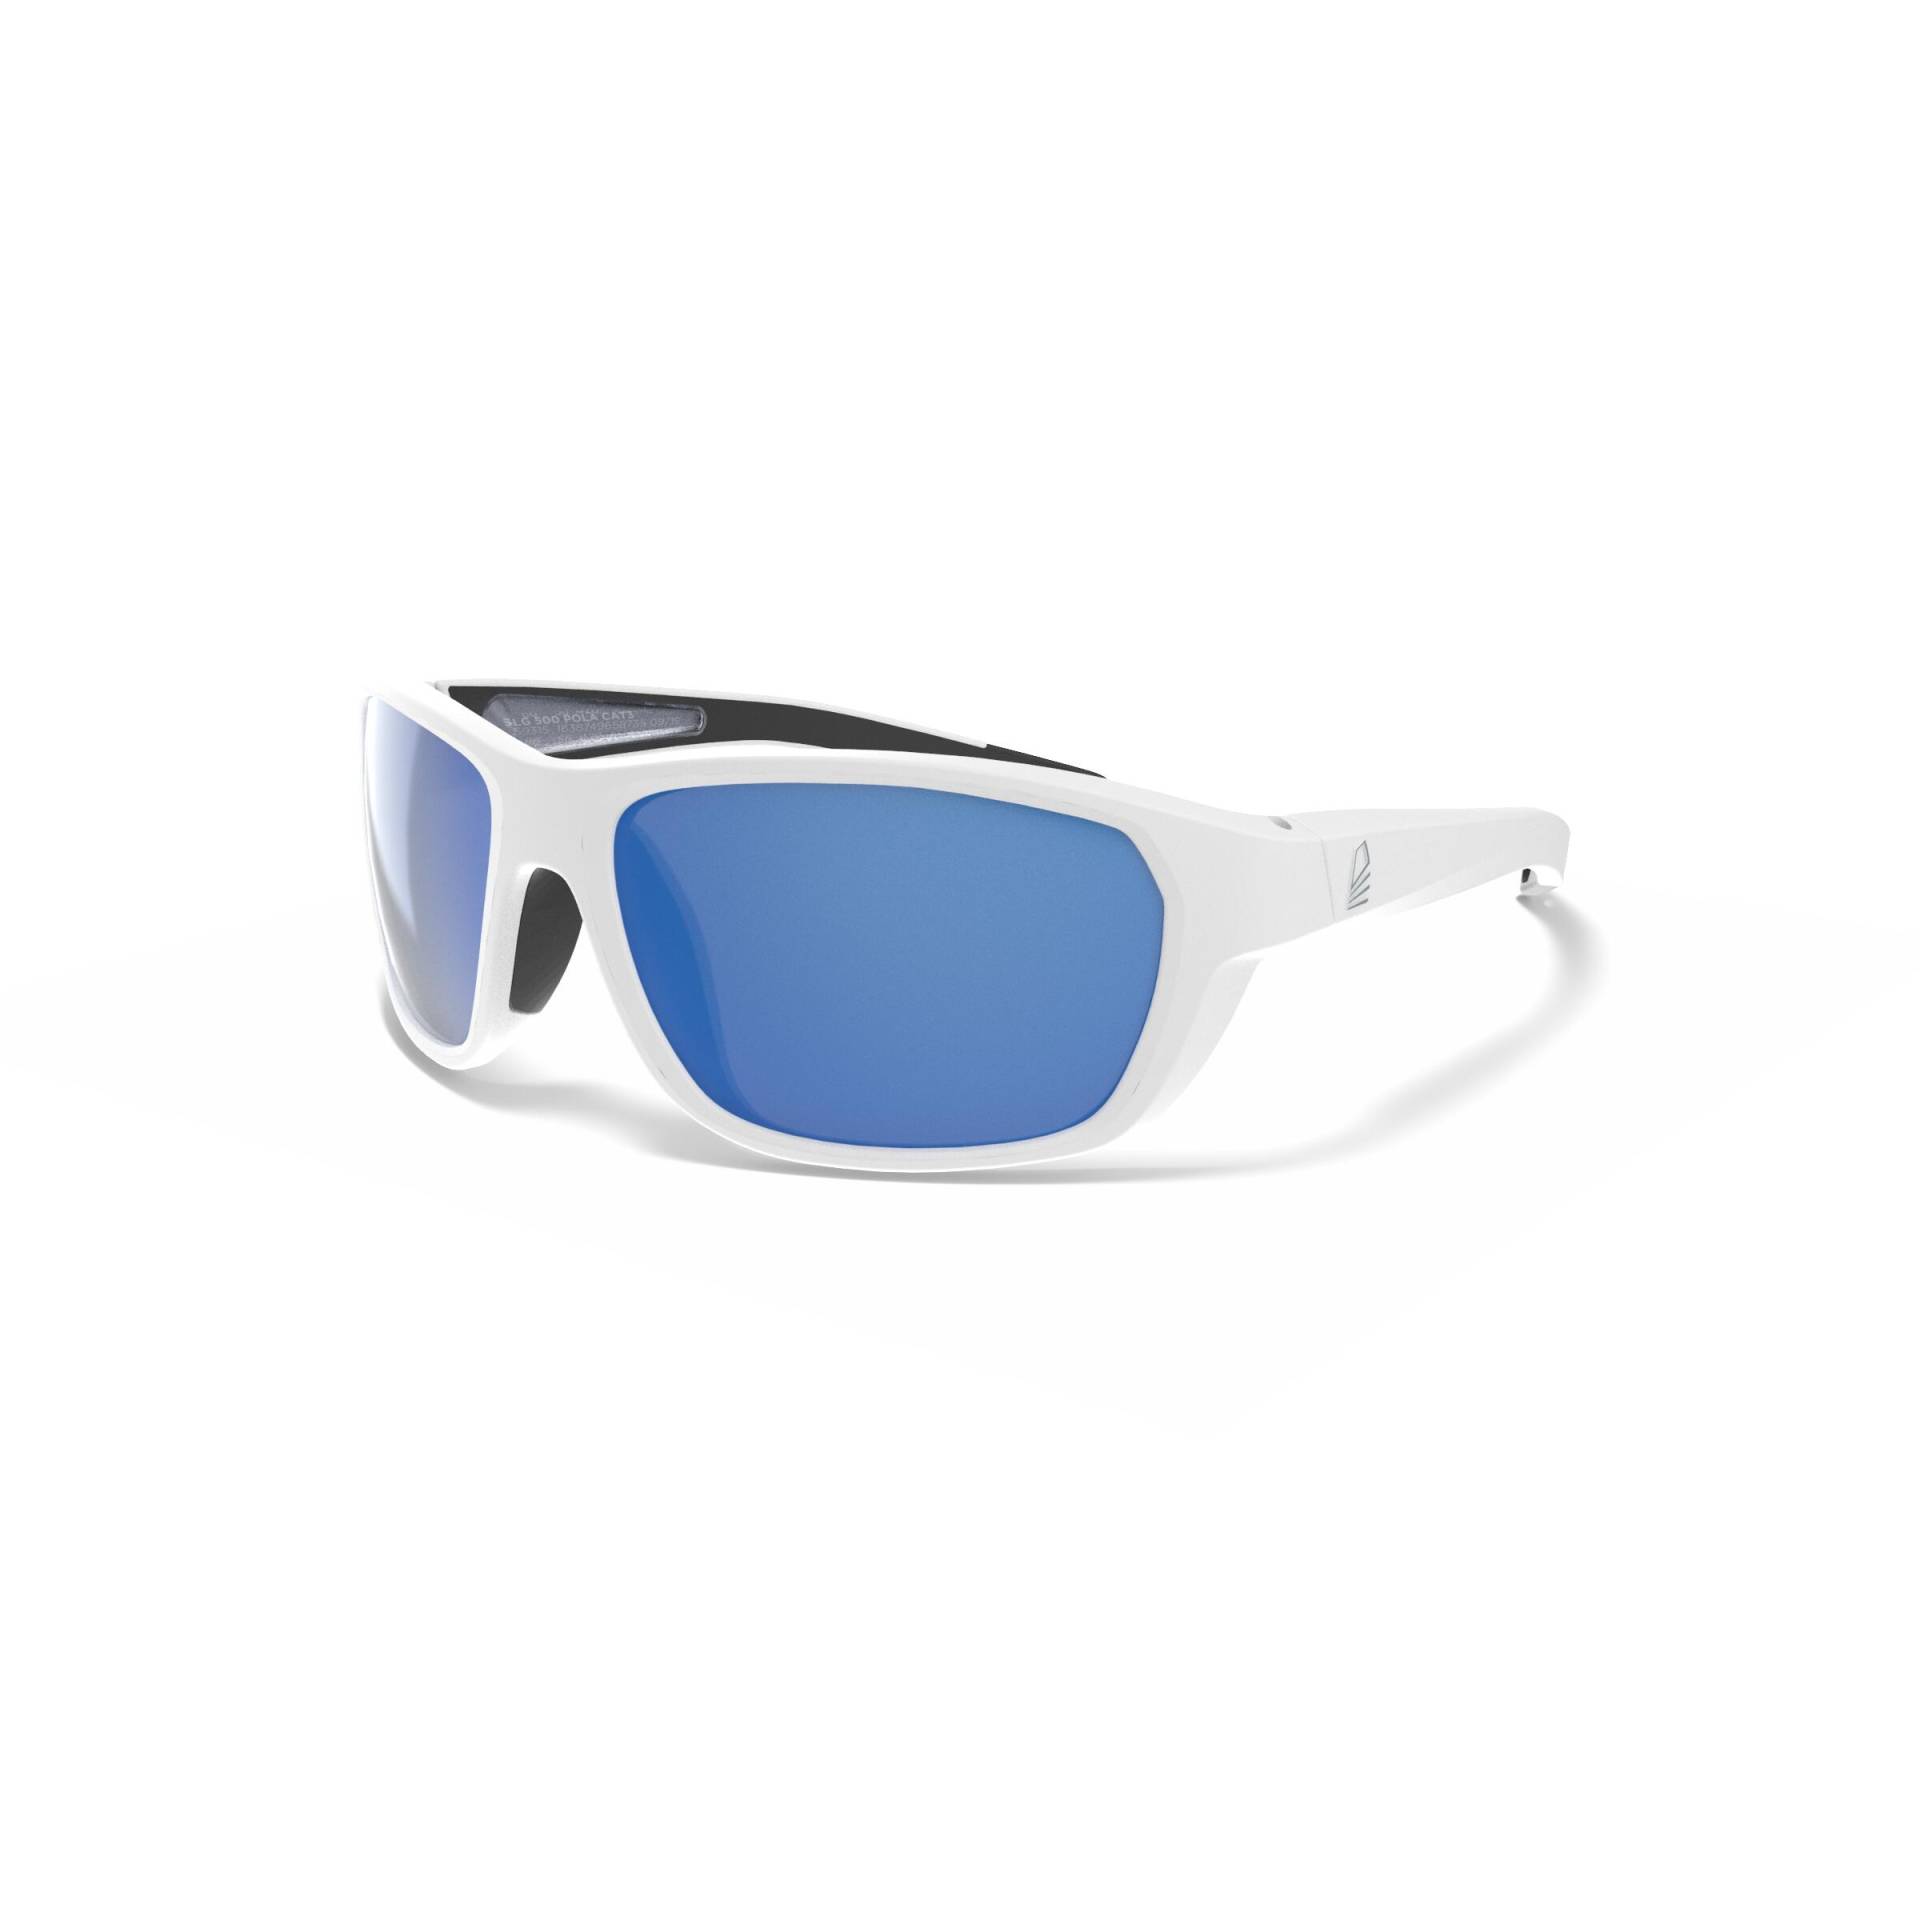 Sonnenbrille Segeln Damen/Herren S polarisierend schwimmfähig - 500 weiss/blau von TRIBORD